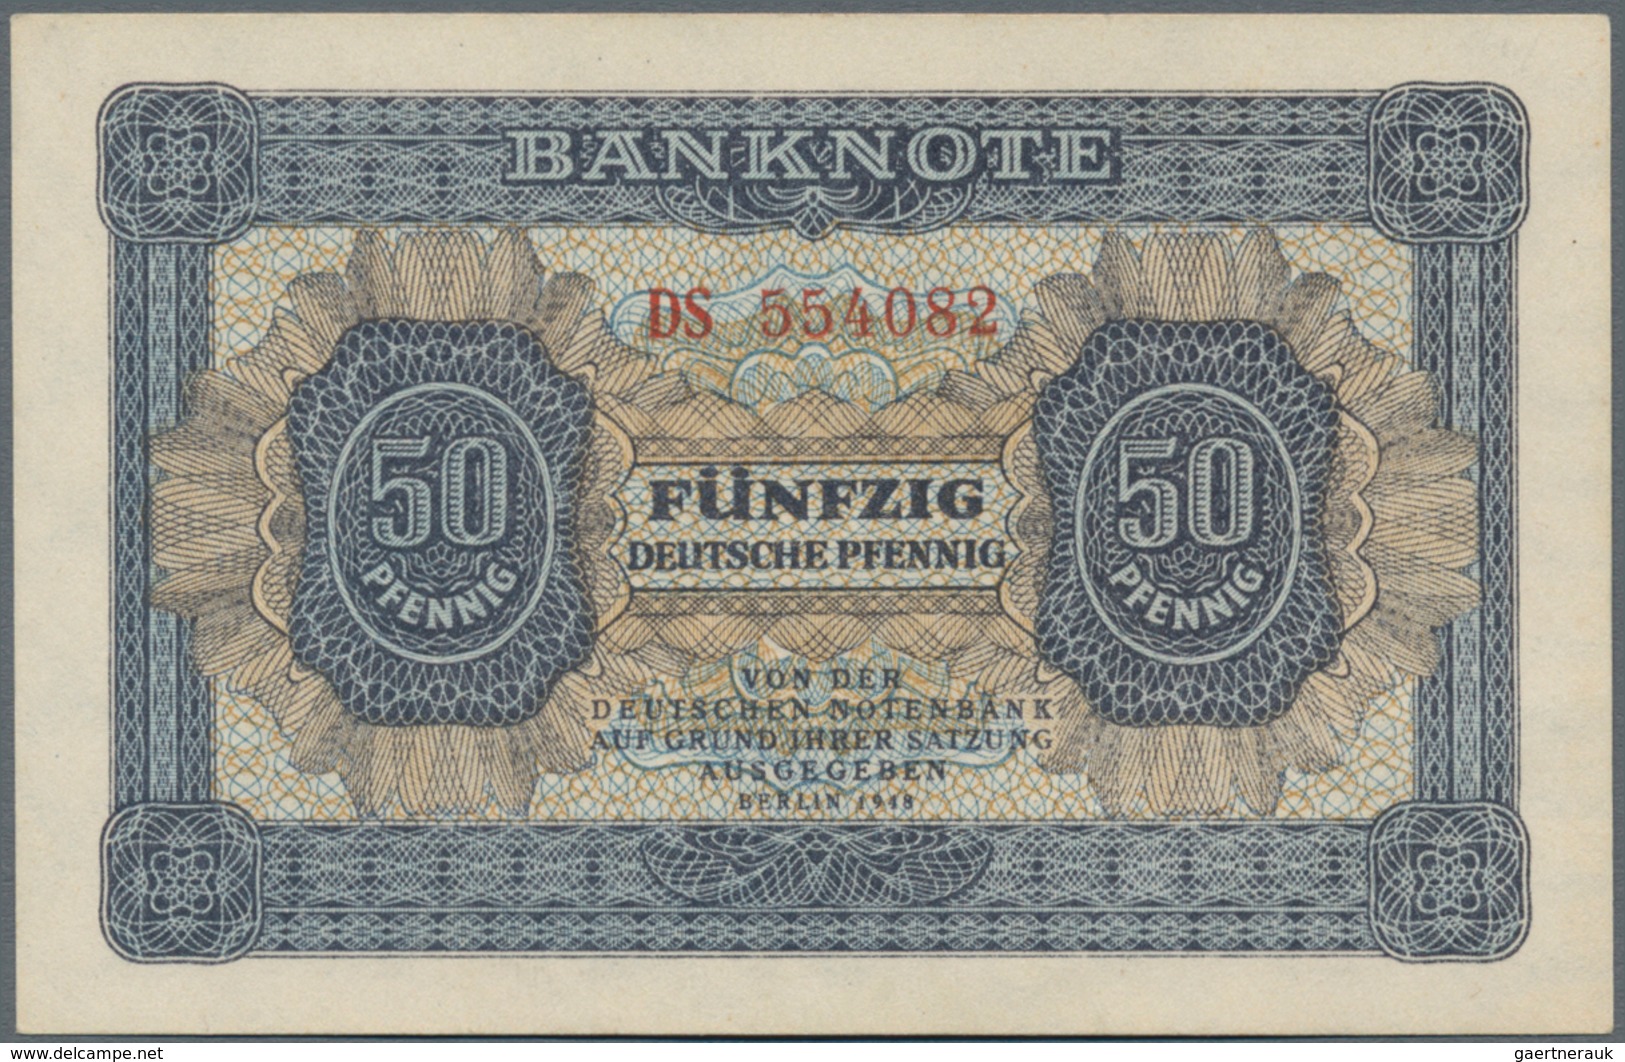 Deutschland - DDR: Sehr schönes Lot mit 9 Banknoten, dabei 10 Mark 1948 mit Klebemarke Ro.334c (VF),